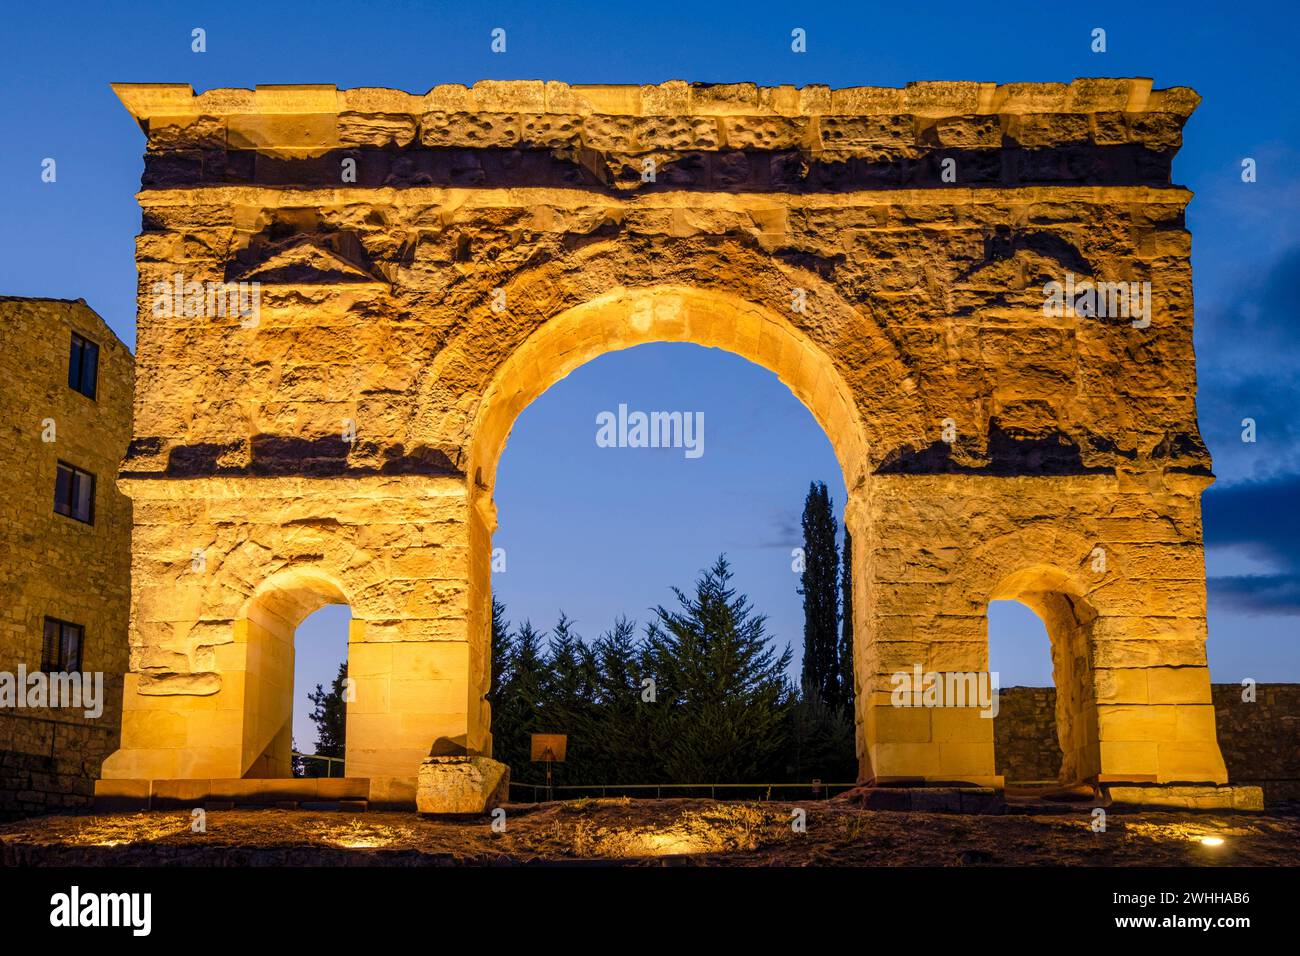 Arco de triunfo romano Stock Photo